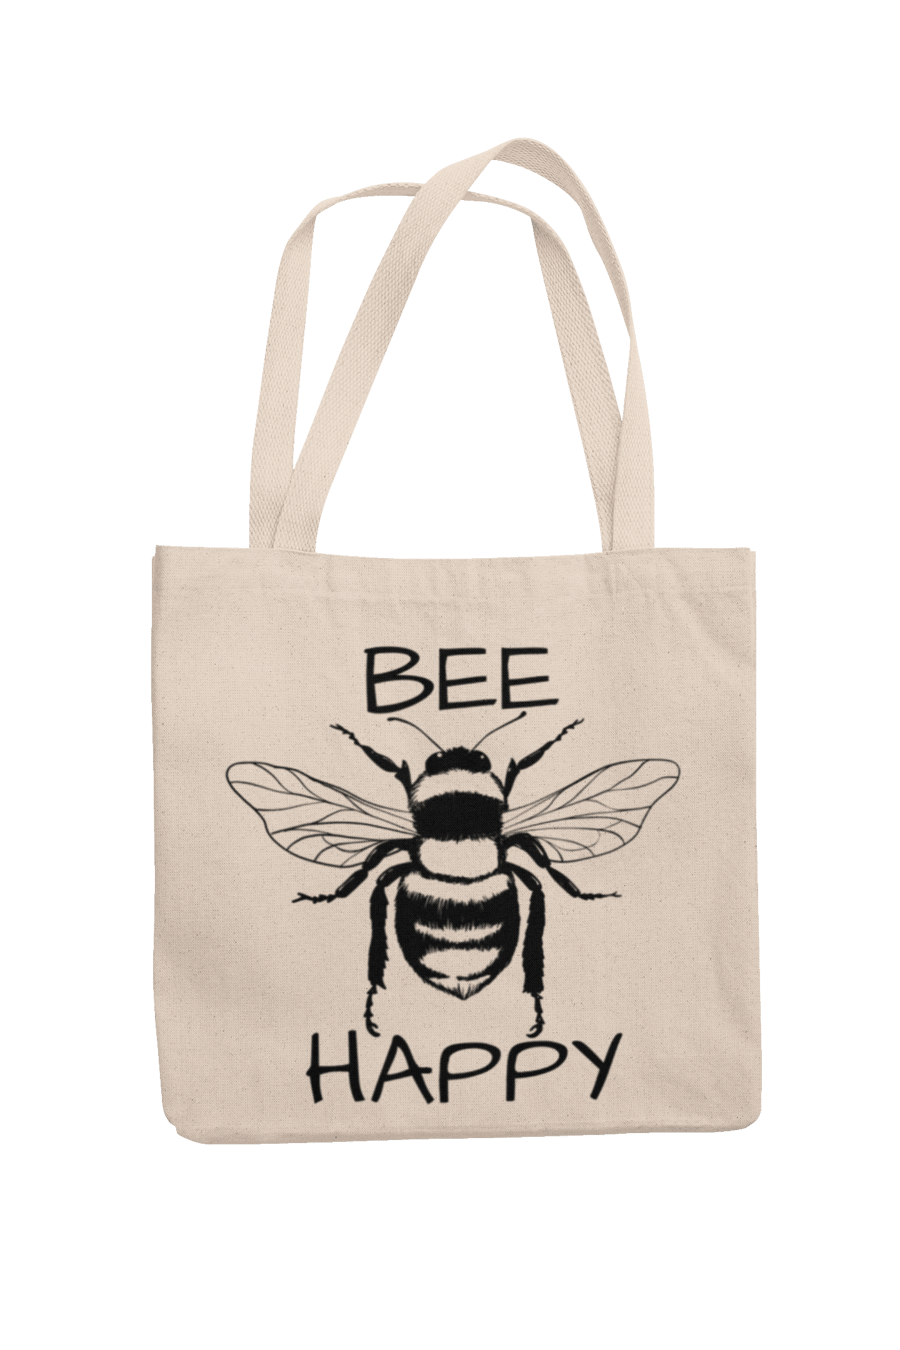 Cute Bee Tote Bag - BEE HAPPY